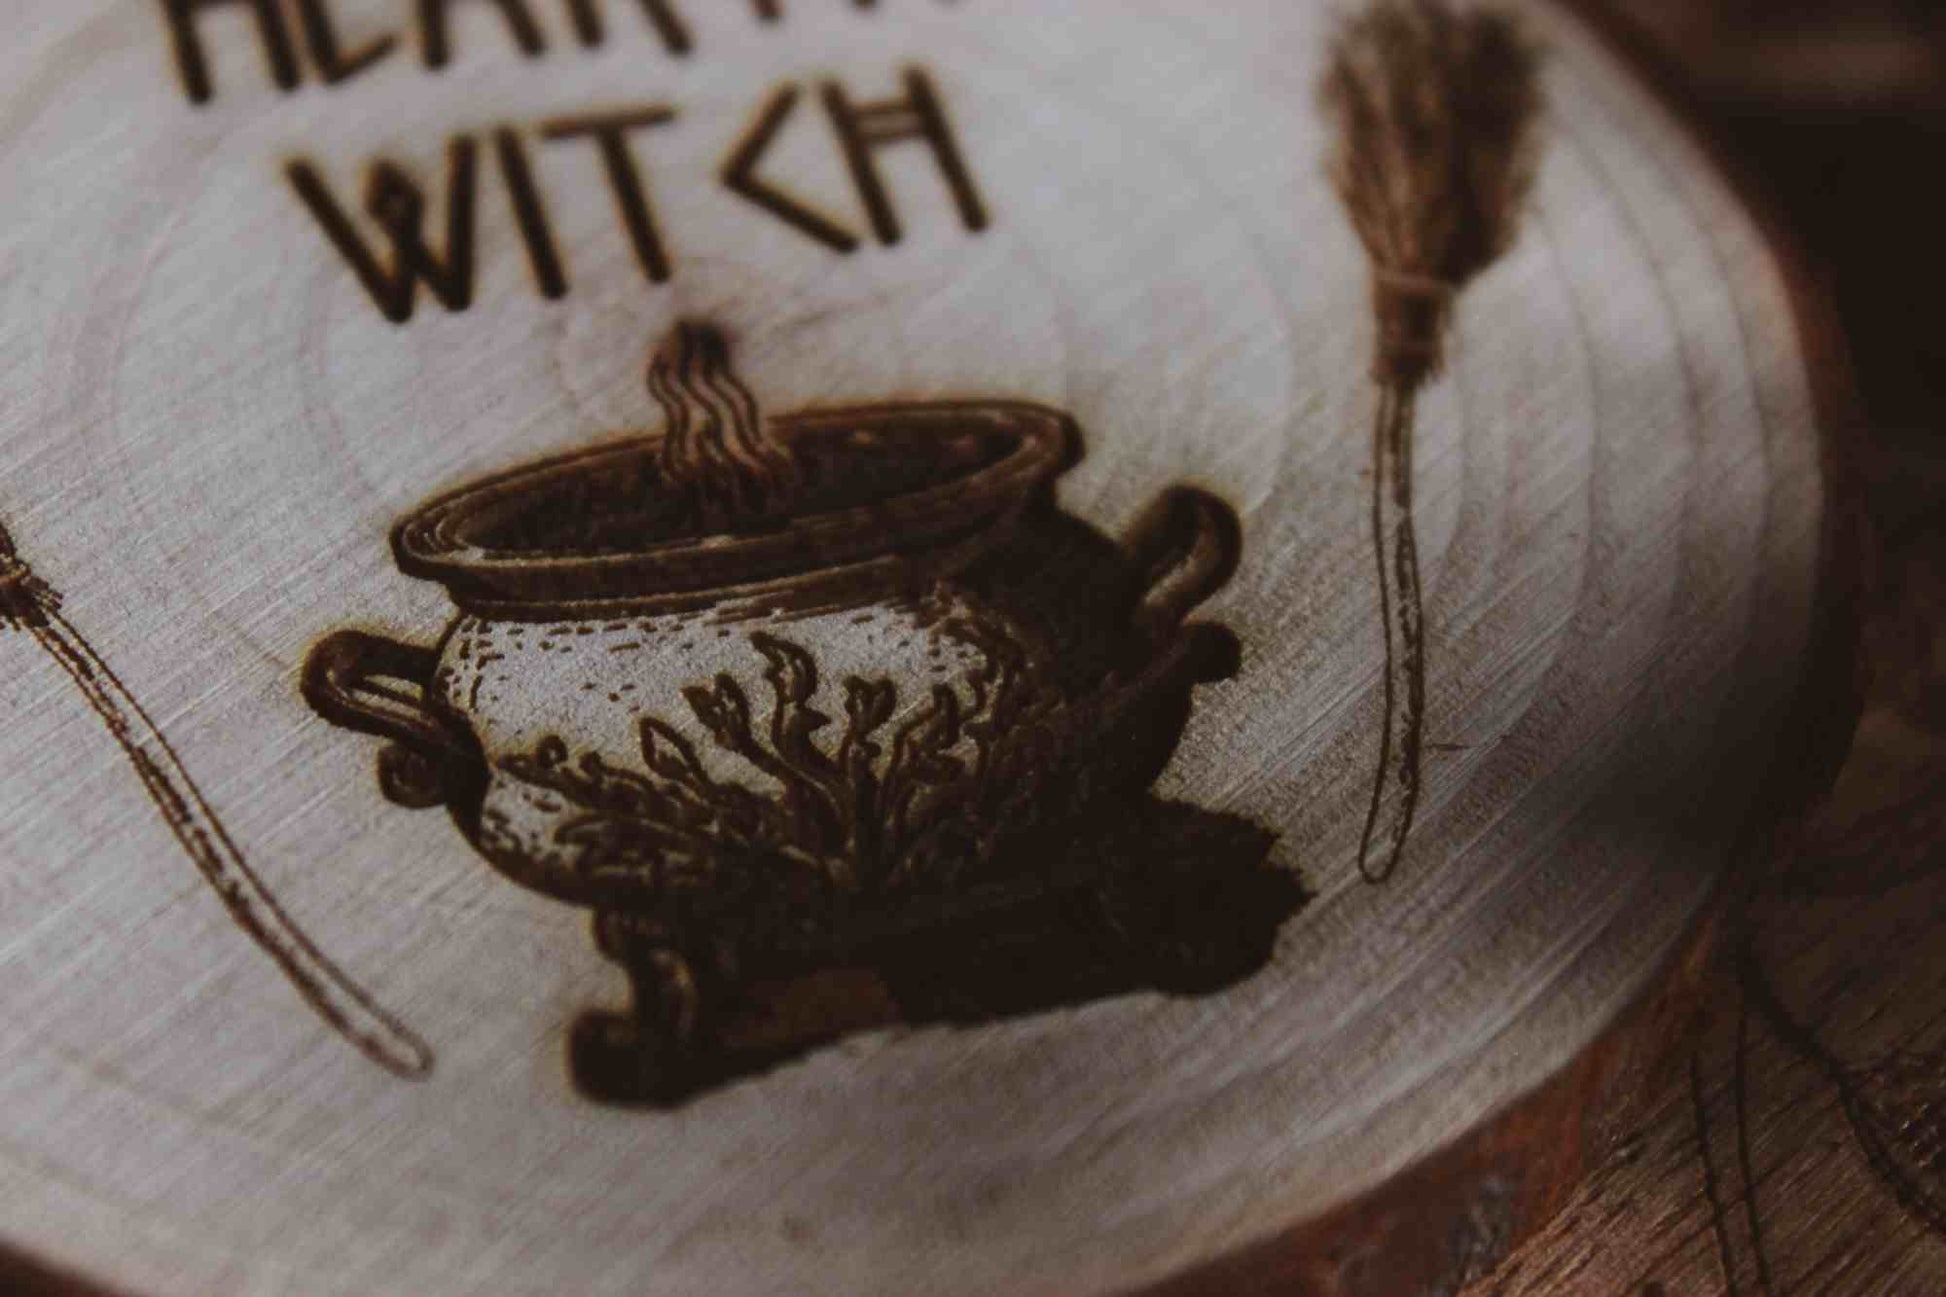 Nahaufnahme Wandbild aus Holz "Hearth Witch" - Wandbild aus Holz "Hearth Witch" -Bild eines hölzernen Gegenstands mit der Inschrift ‘Hearth Witch’, auf der Scheibe sieht man 2 Besen die einen Hexenkessel umrahmen u